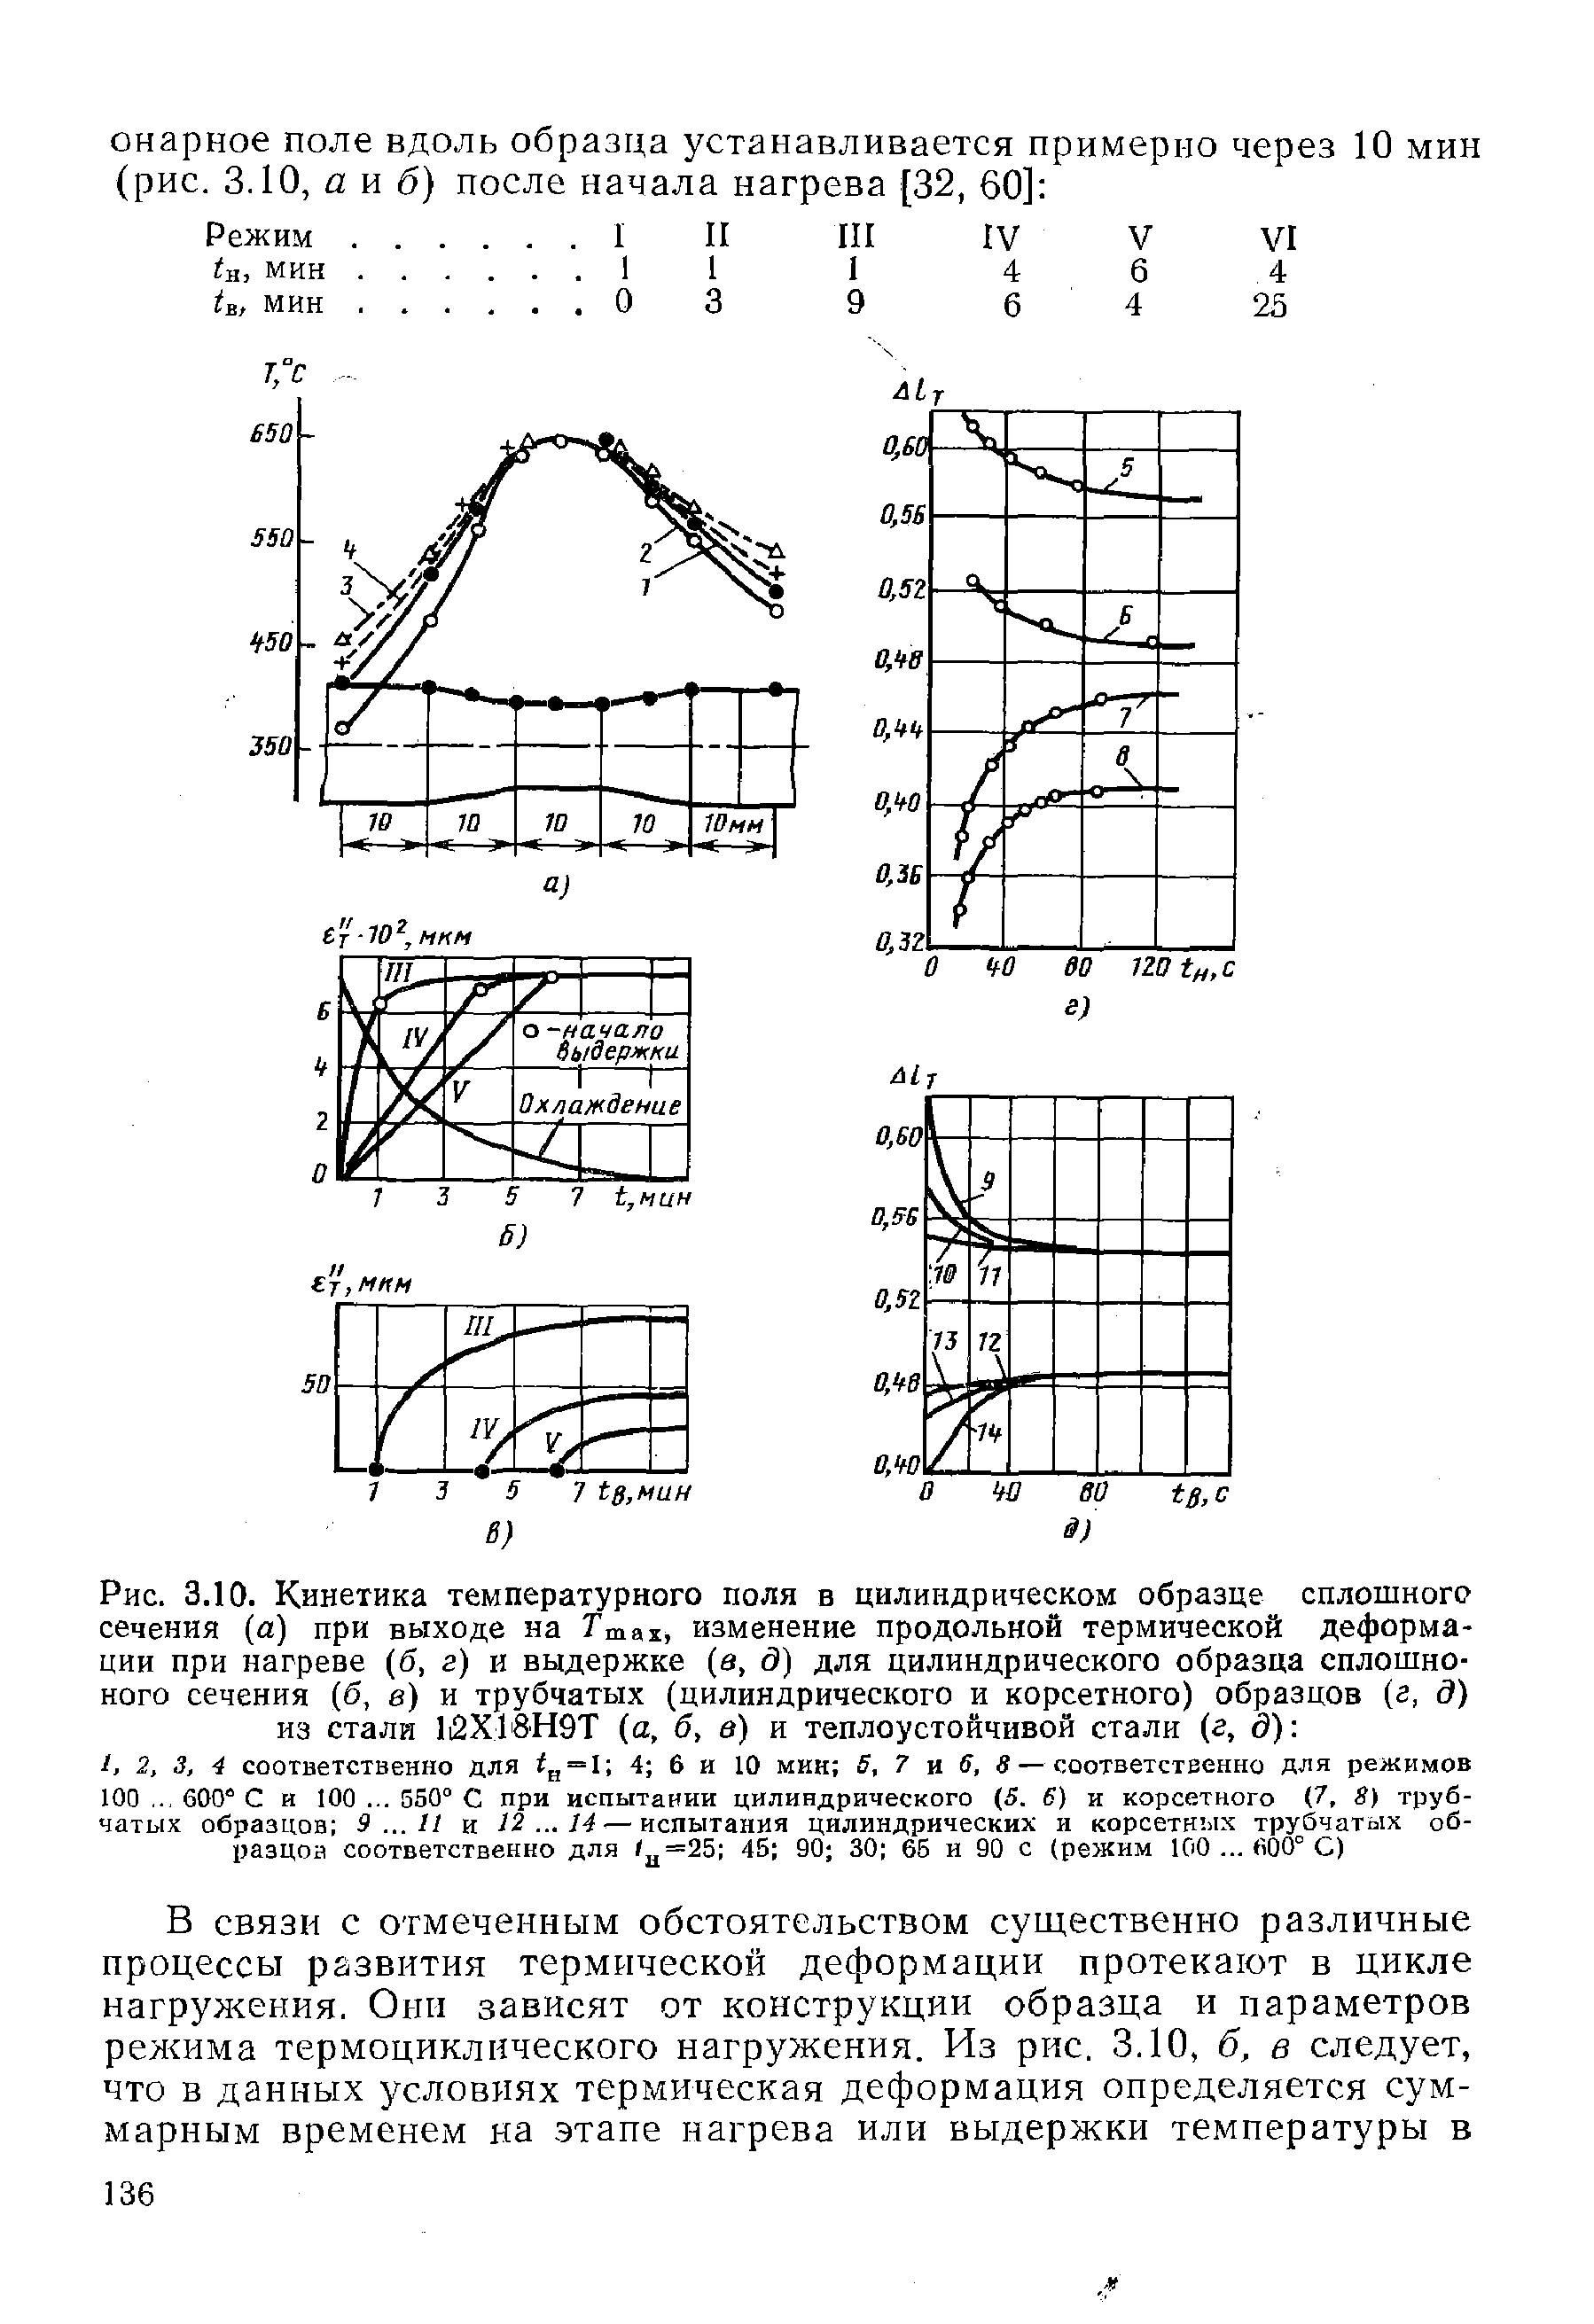 Рис. 3.10. Кинетика <a href="/info/839">температурного поля</a> в цилиндрическом образце сплошного сечения (а) при выходе на Ттах, изменение продольной термической деформации при нагреве (б, г) и выдержке (а, д) для цилиндрического образца сплошноного сечения (б, в) и трубчатых (цилиндрического и корсетного) образцов (г, д) из стали li2X18H9T (а, б, в) и теплоустойчивой стали (г, д) 
